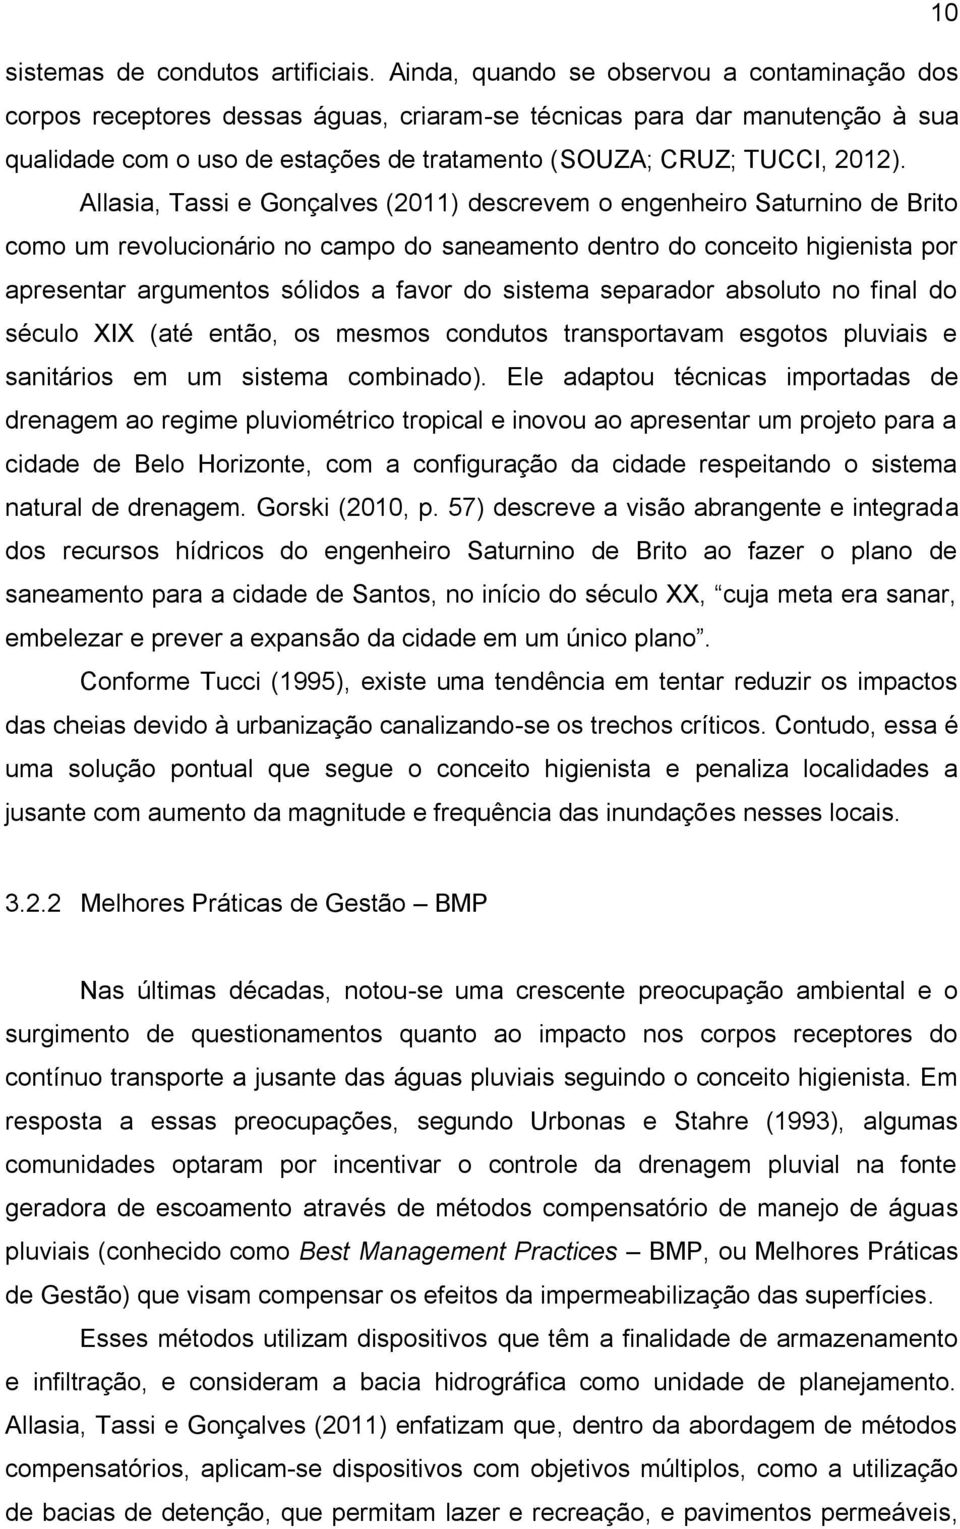 Allasia, Tassi e Gonçalves (2011) descrevem o engenheiro Saturnino de Brito como um revolucionário no campo do saneamento dentro do conceito higienista por apresentar argumentos sólidos a favor do